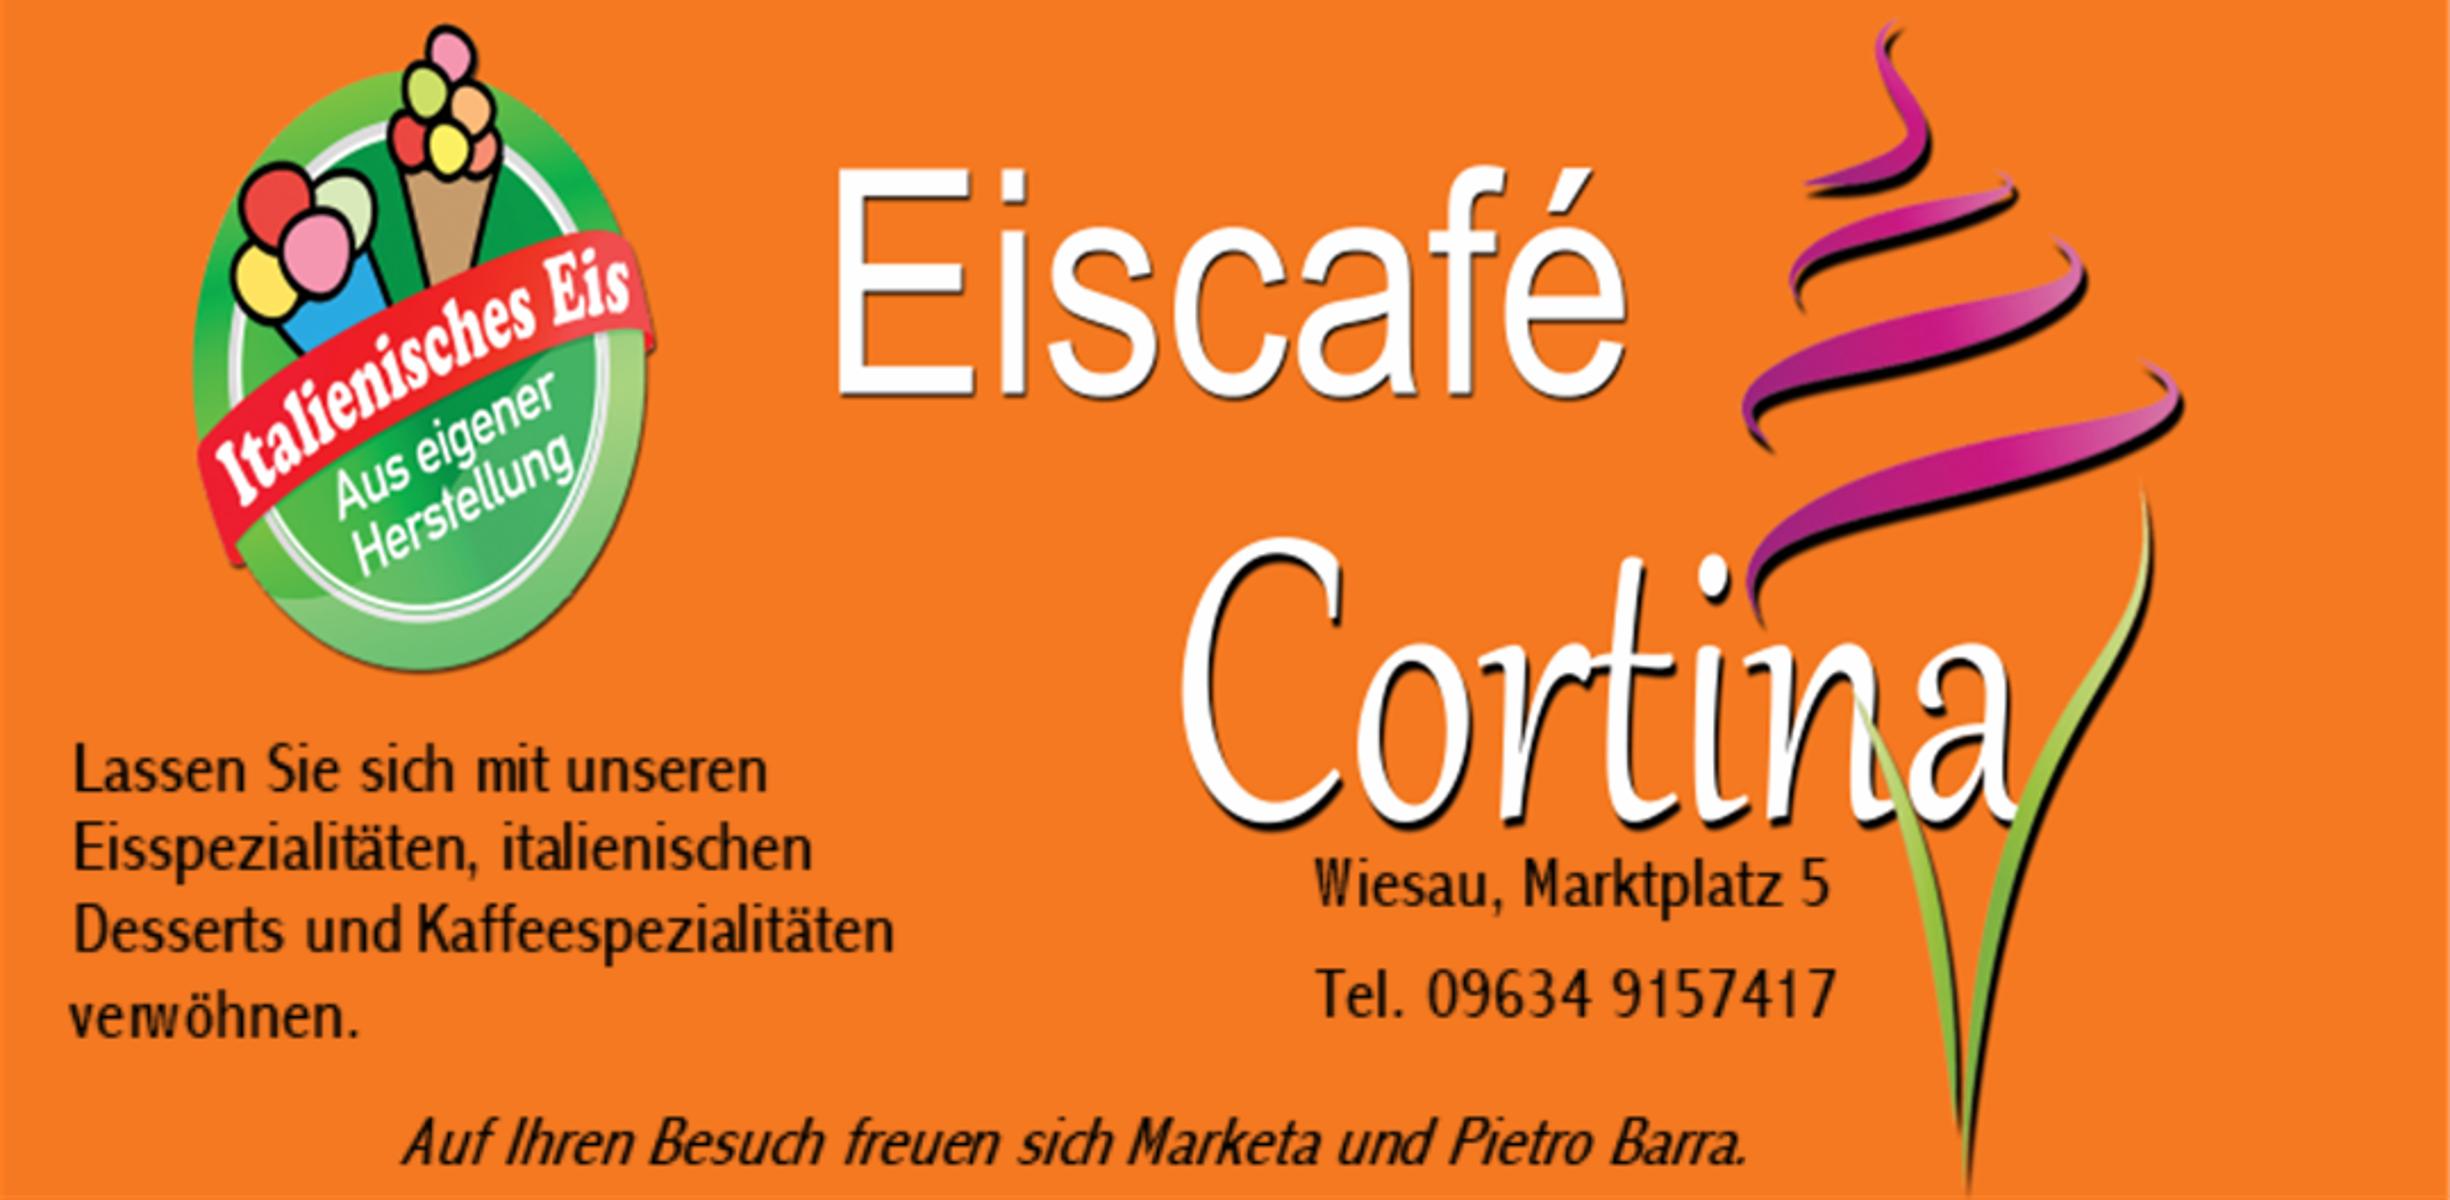 Herzlich willkommen im Eiscafé Cortina!